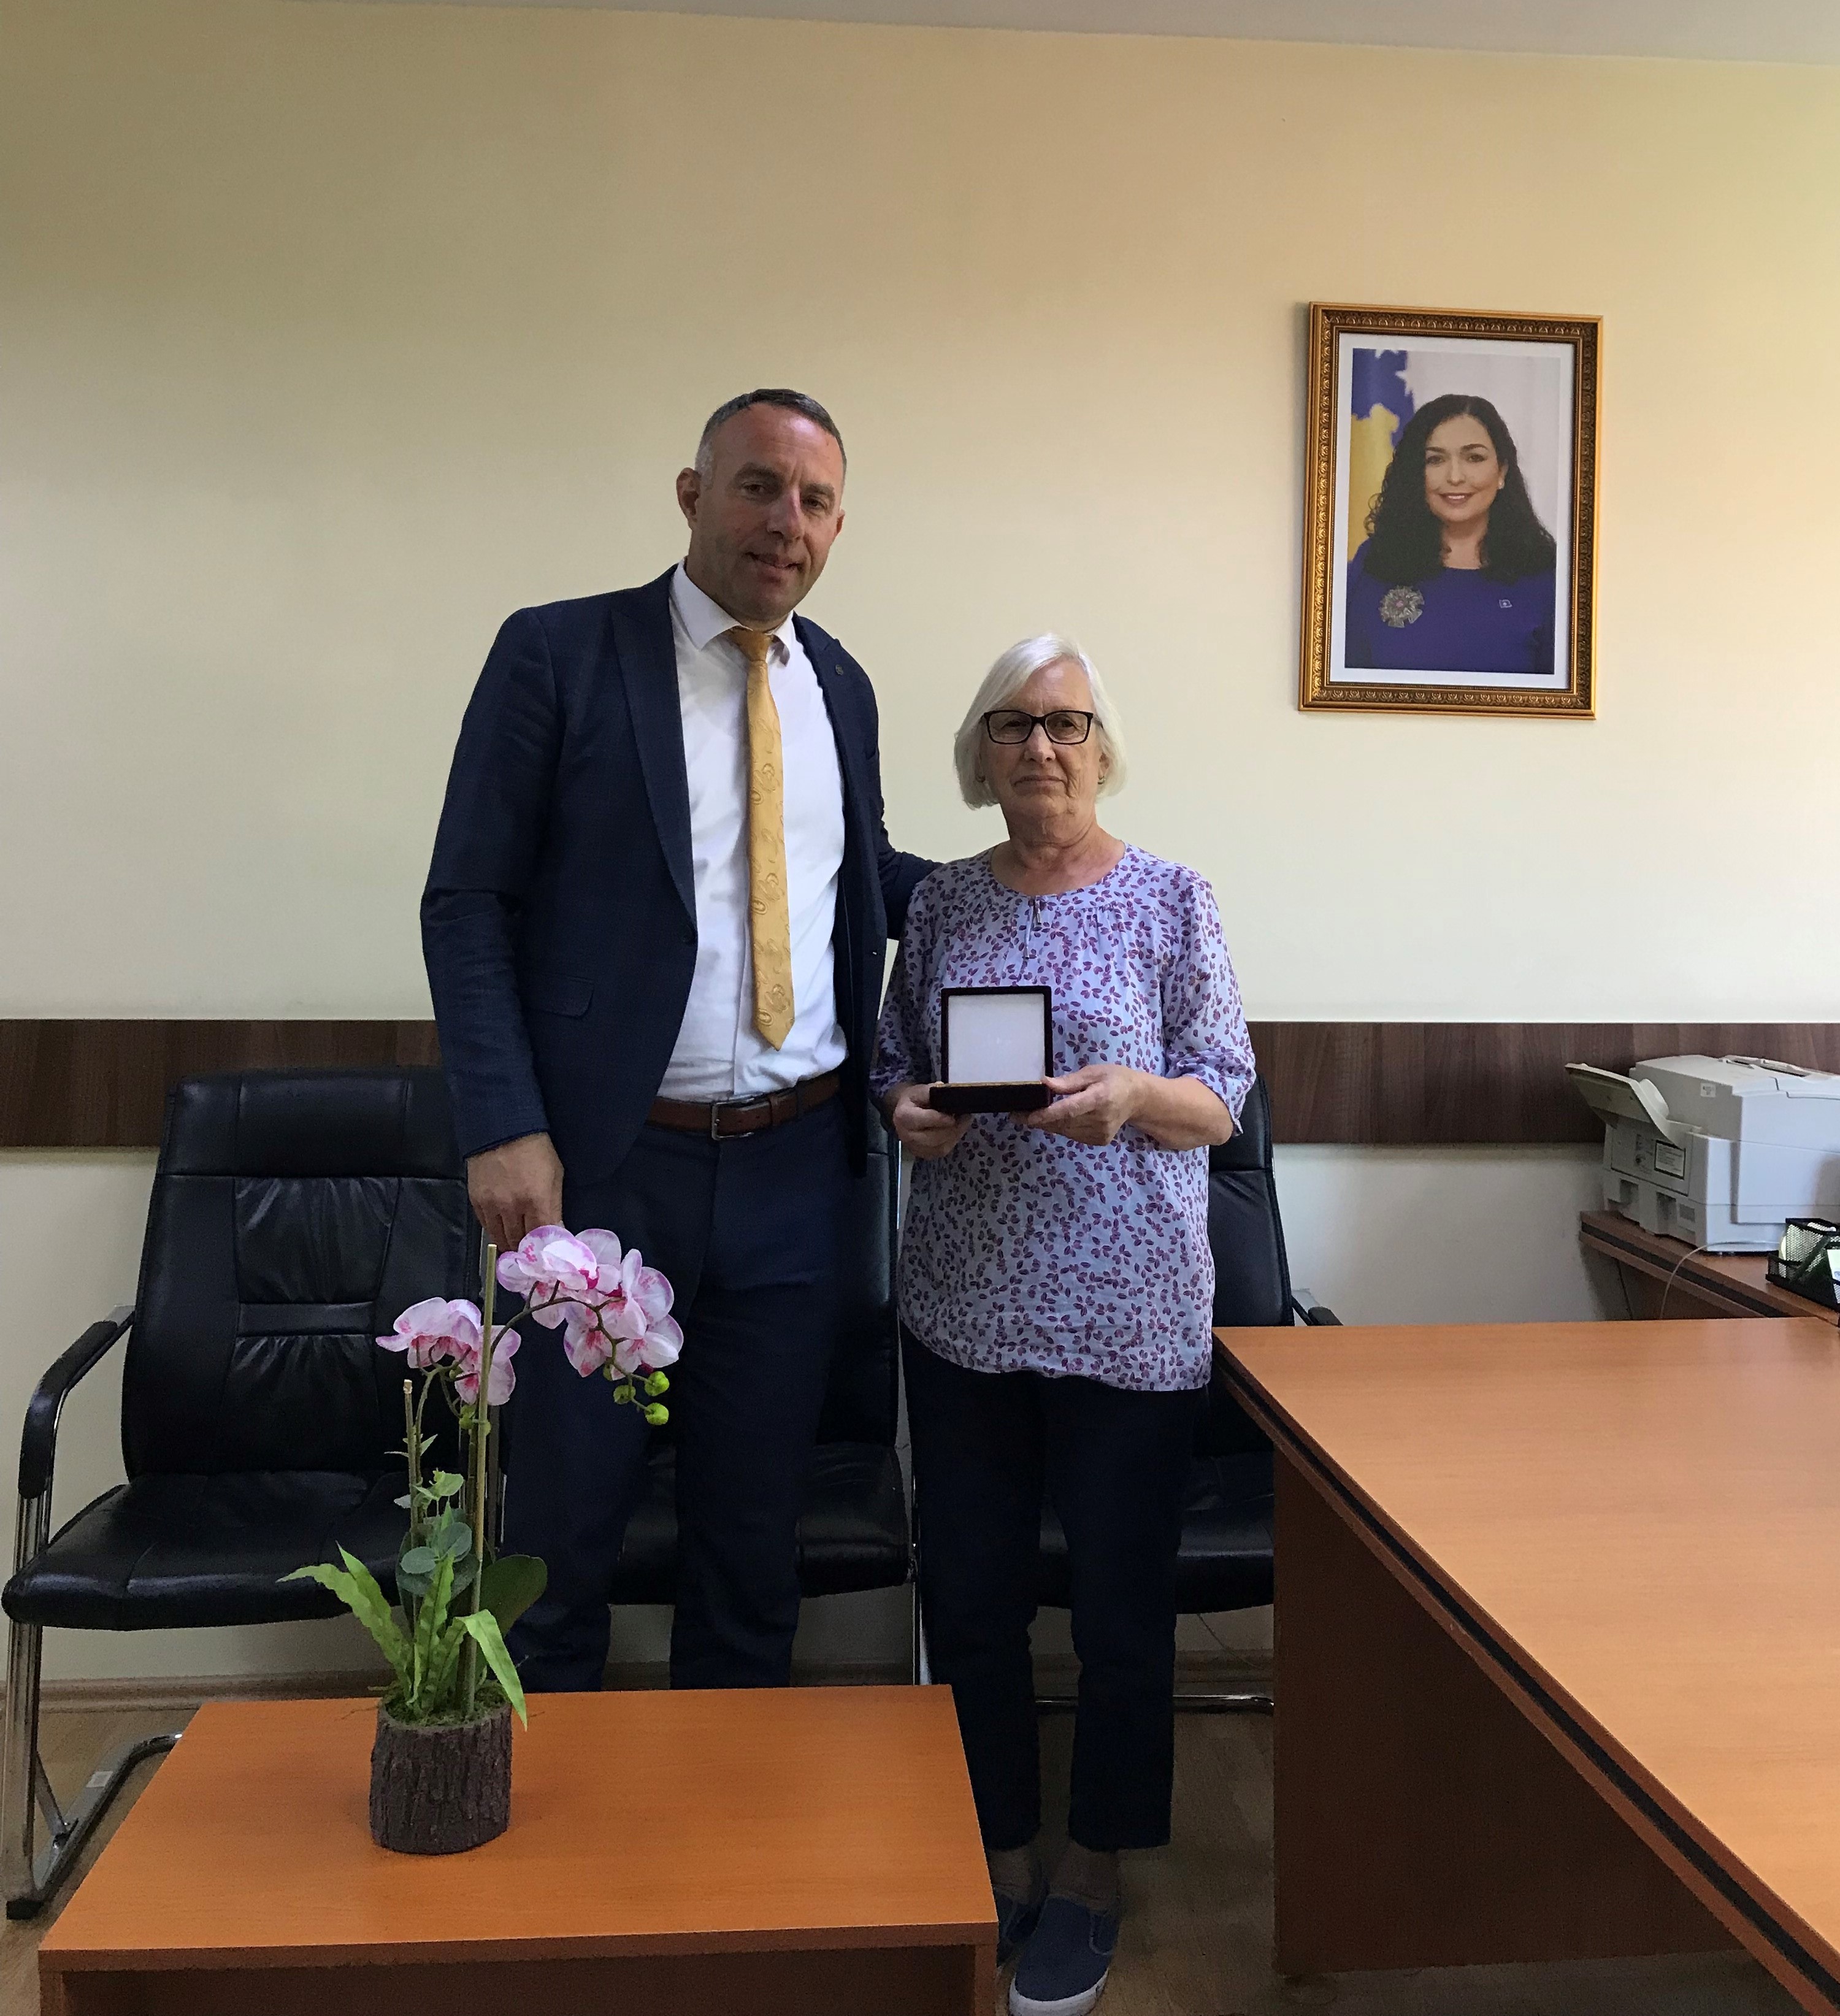 Ka arritur moshën e pensionimit përkthyesja e Gjykatës Themelore në Prishtinë-dega në Podujevë